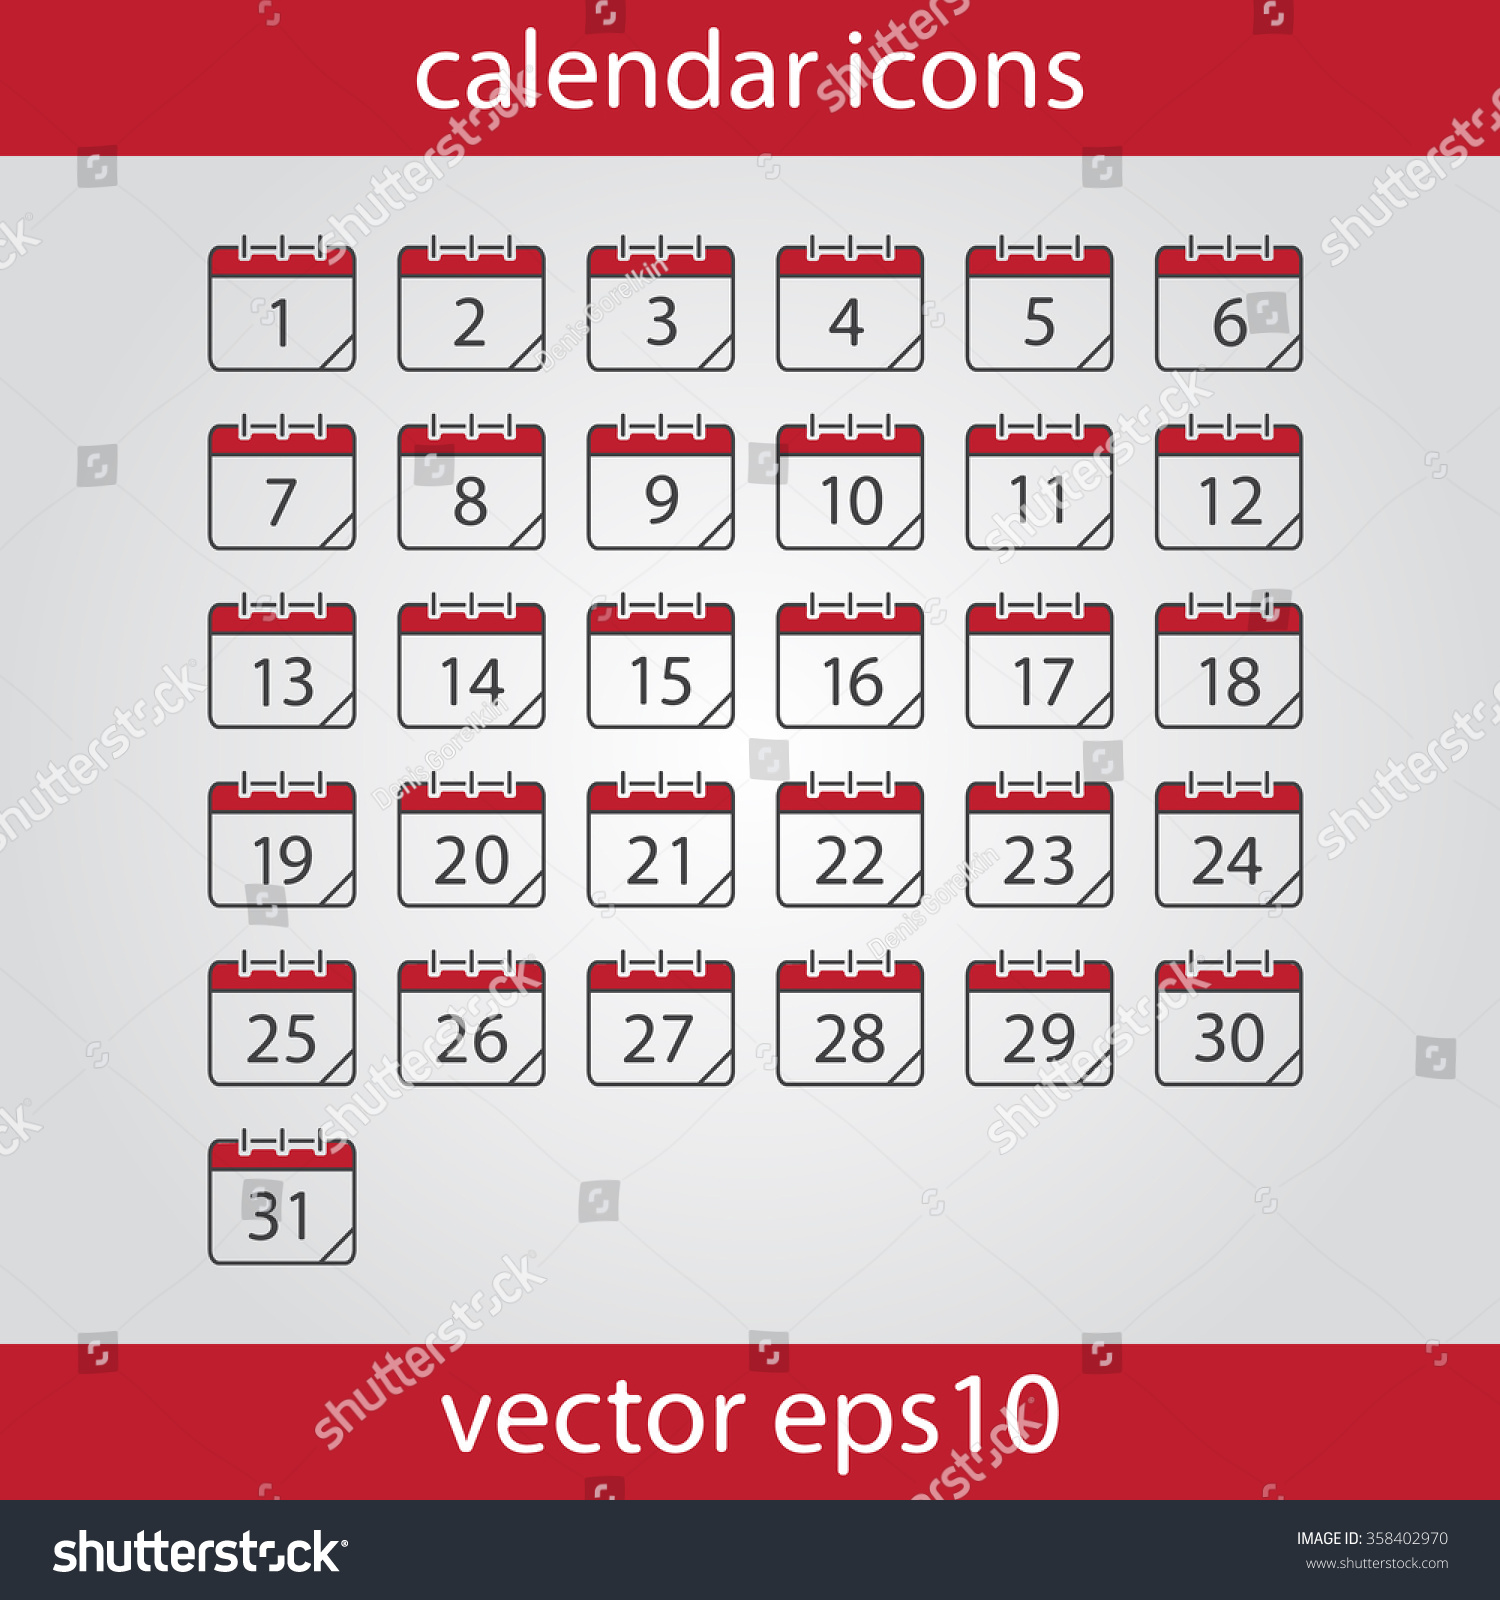 Calendar Icon Vector Eps10 Illustration Calendar Stock Vector 358402970 ...